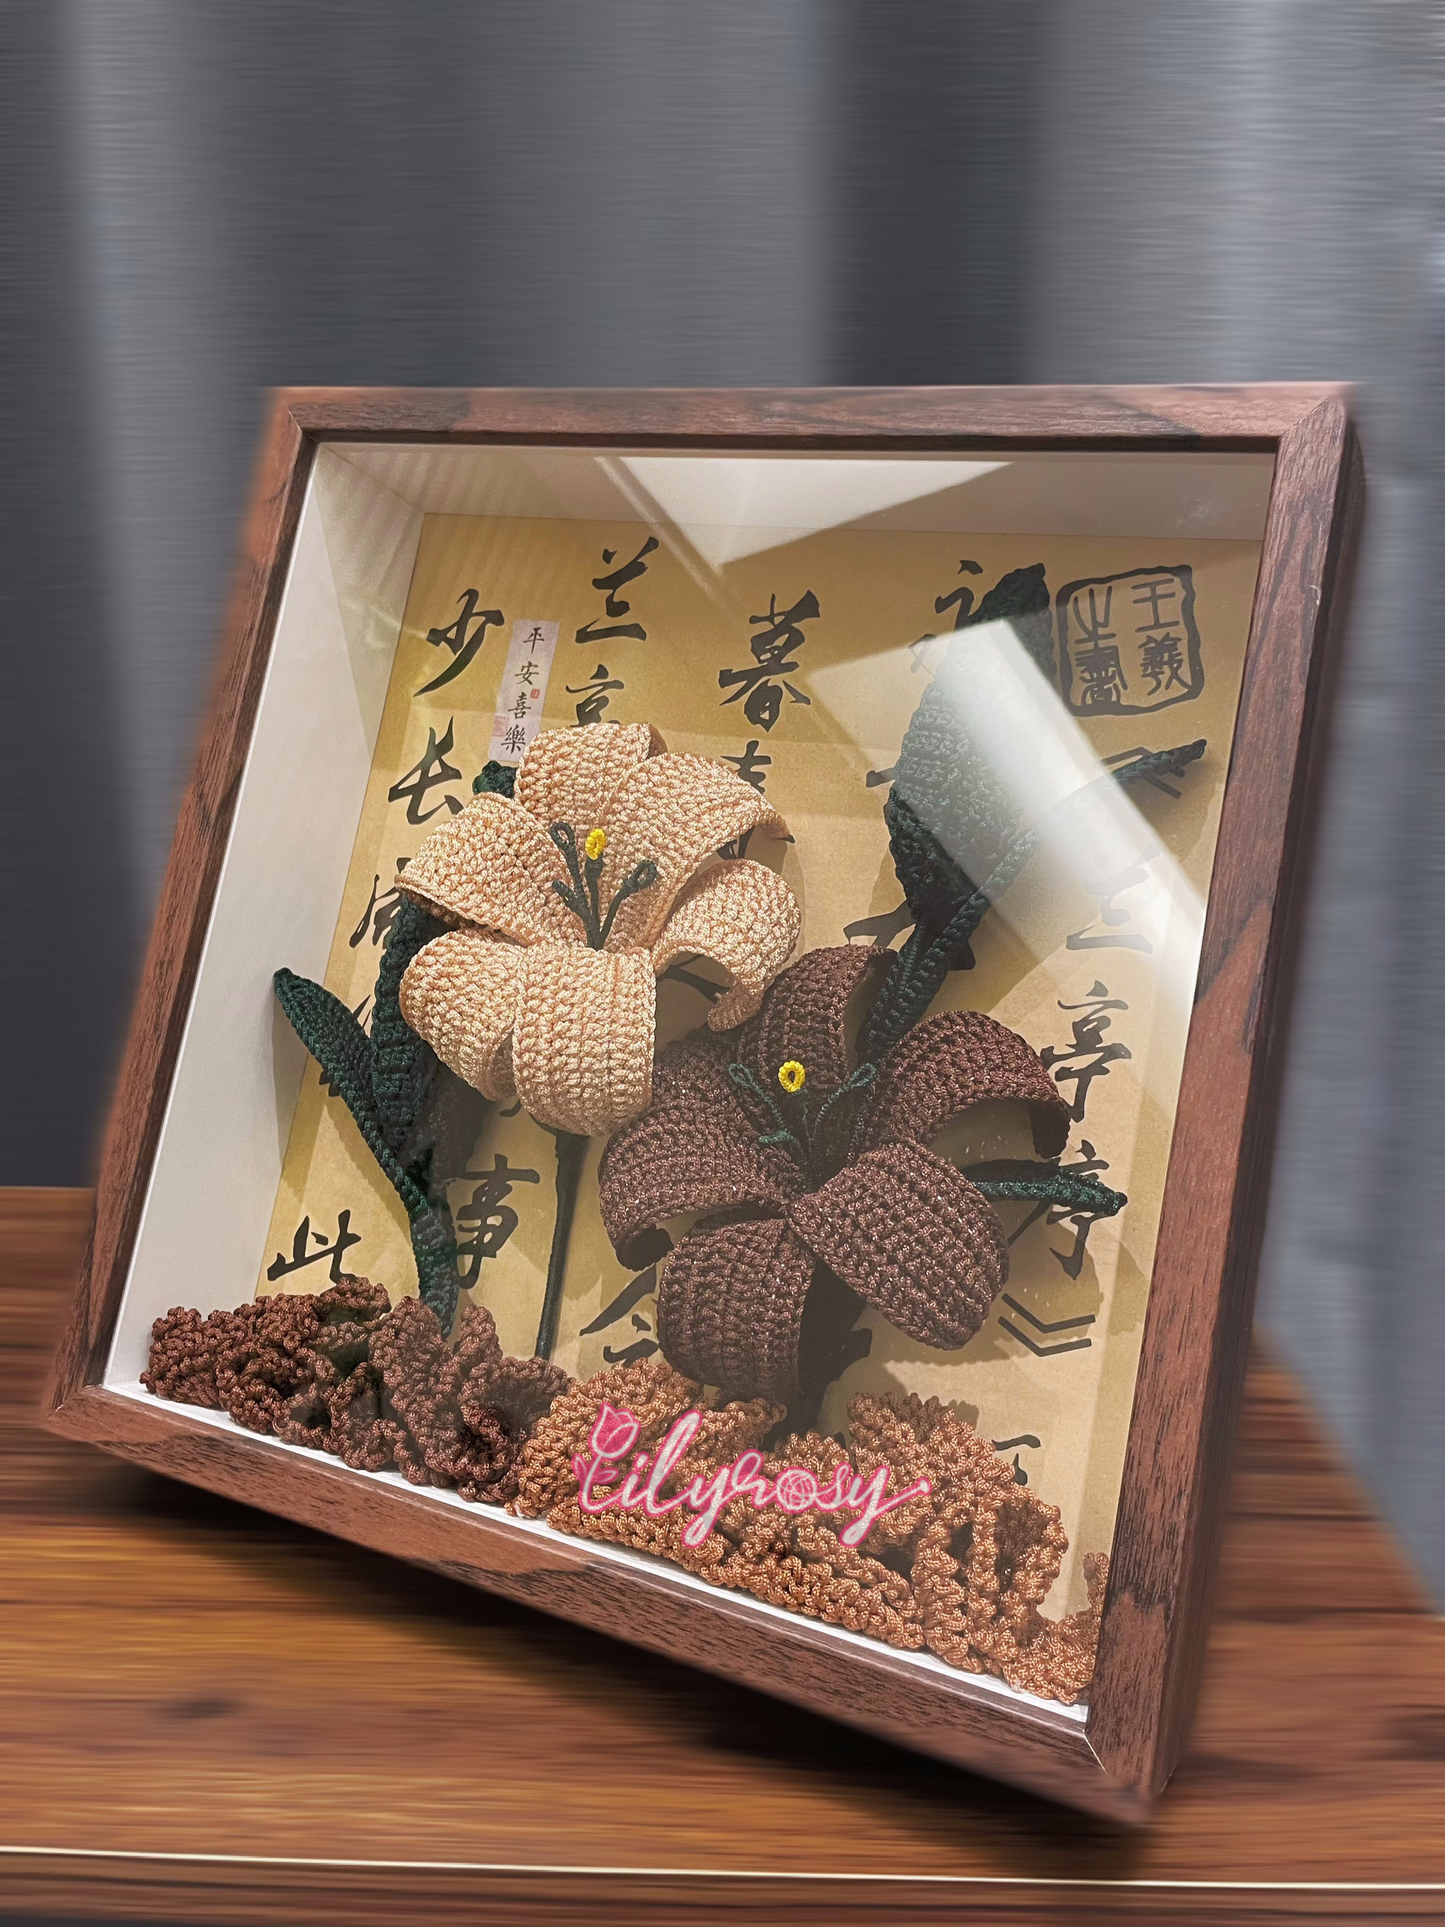 Handmade|Crochet lilies photo frame ,table  Decor, Office decor,home decor